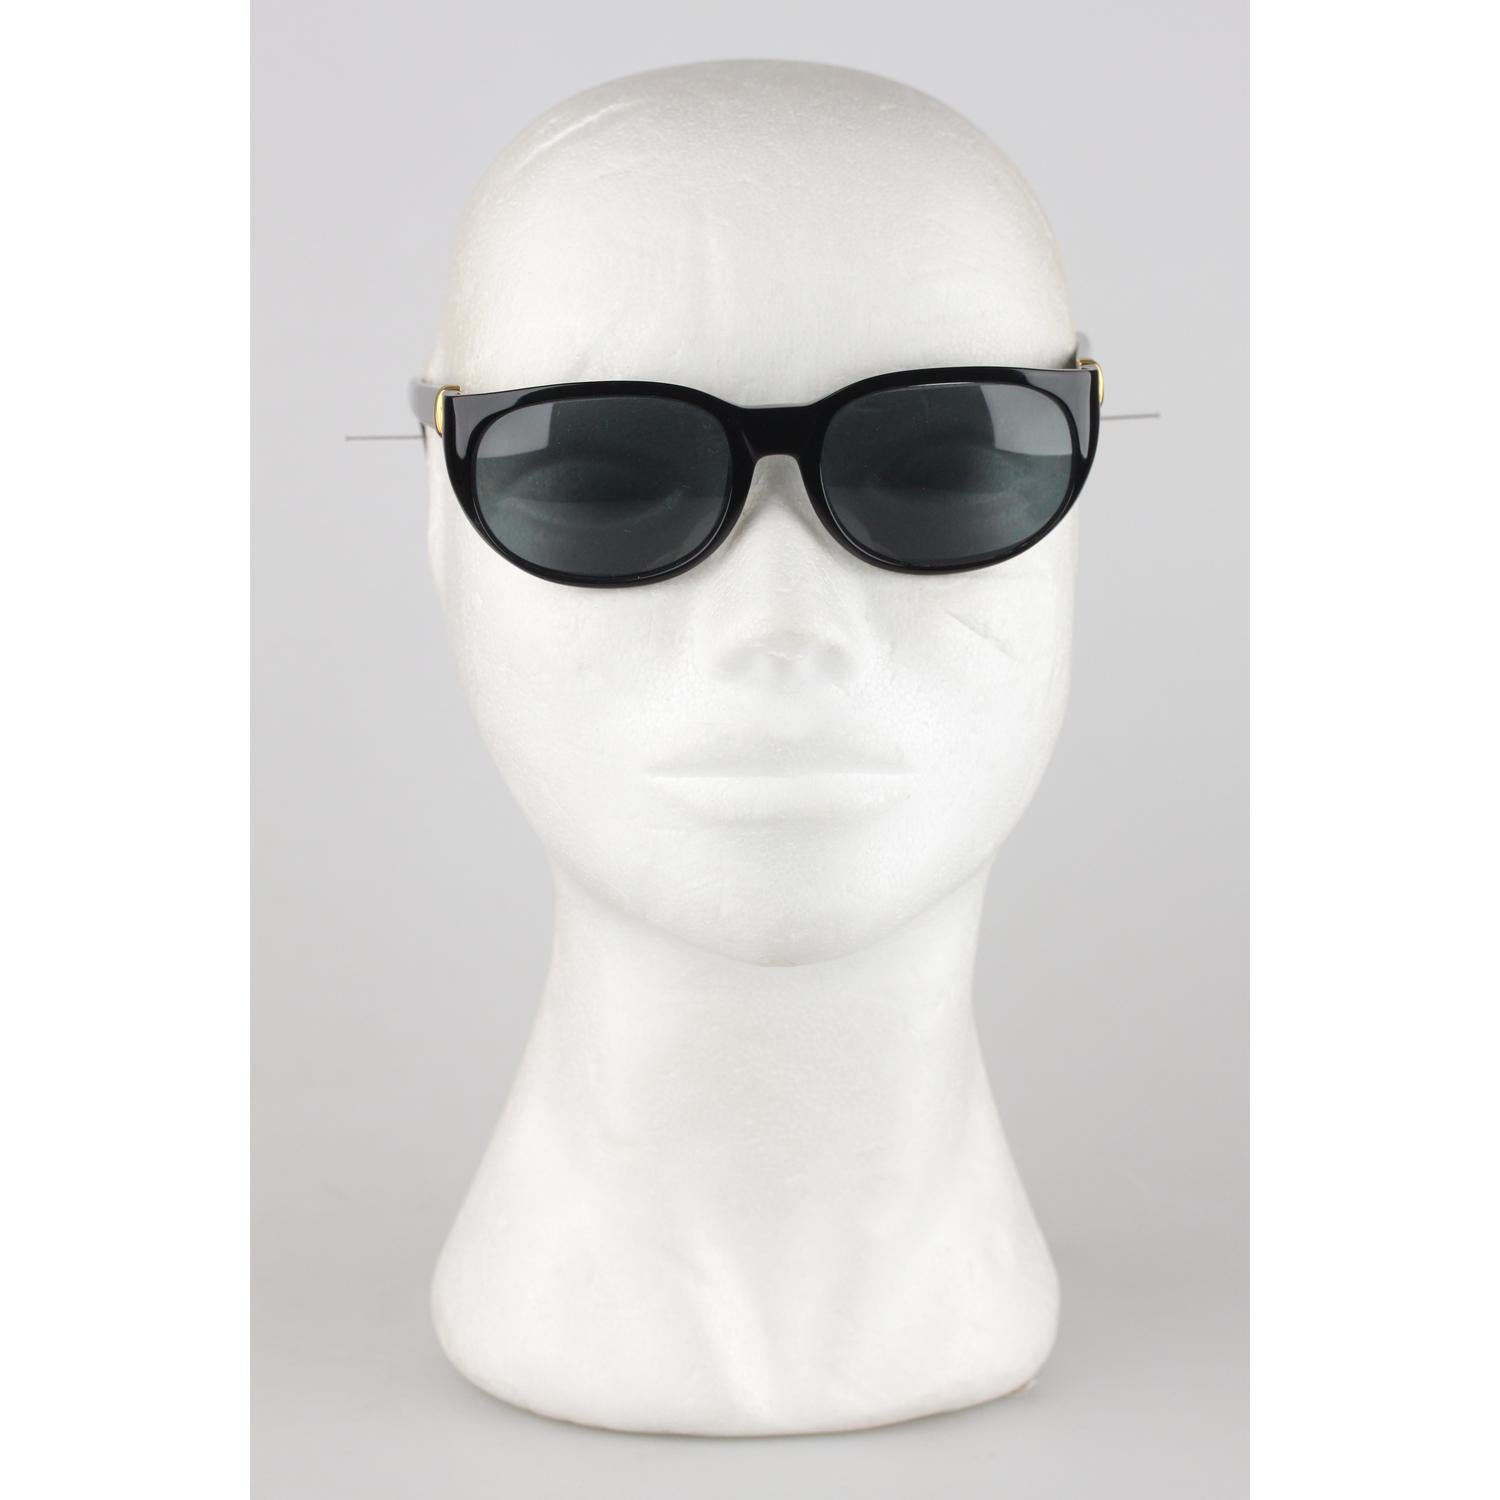 Cartier Paris Black Unisex Sunglasses Noir T8200184 New Old Stock 7